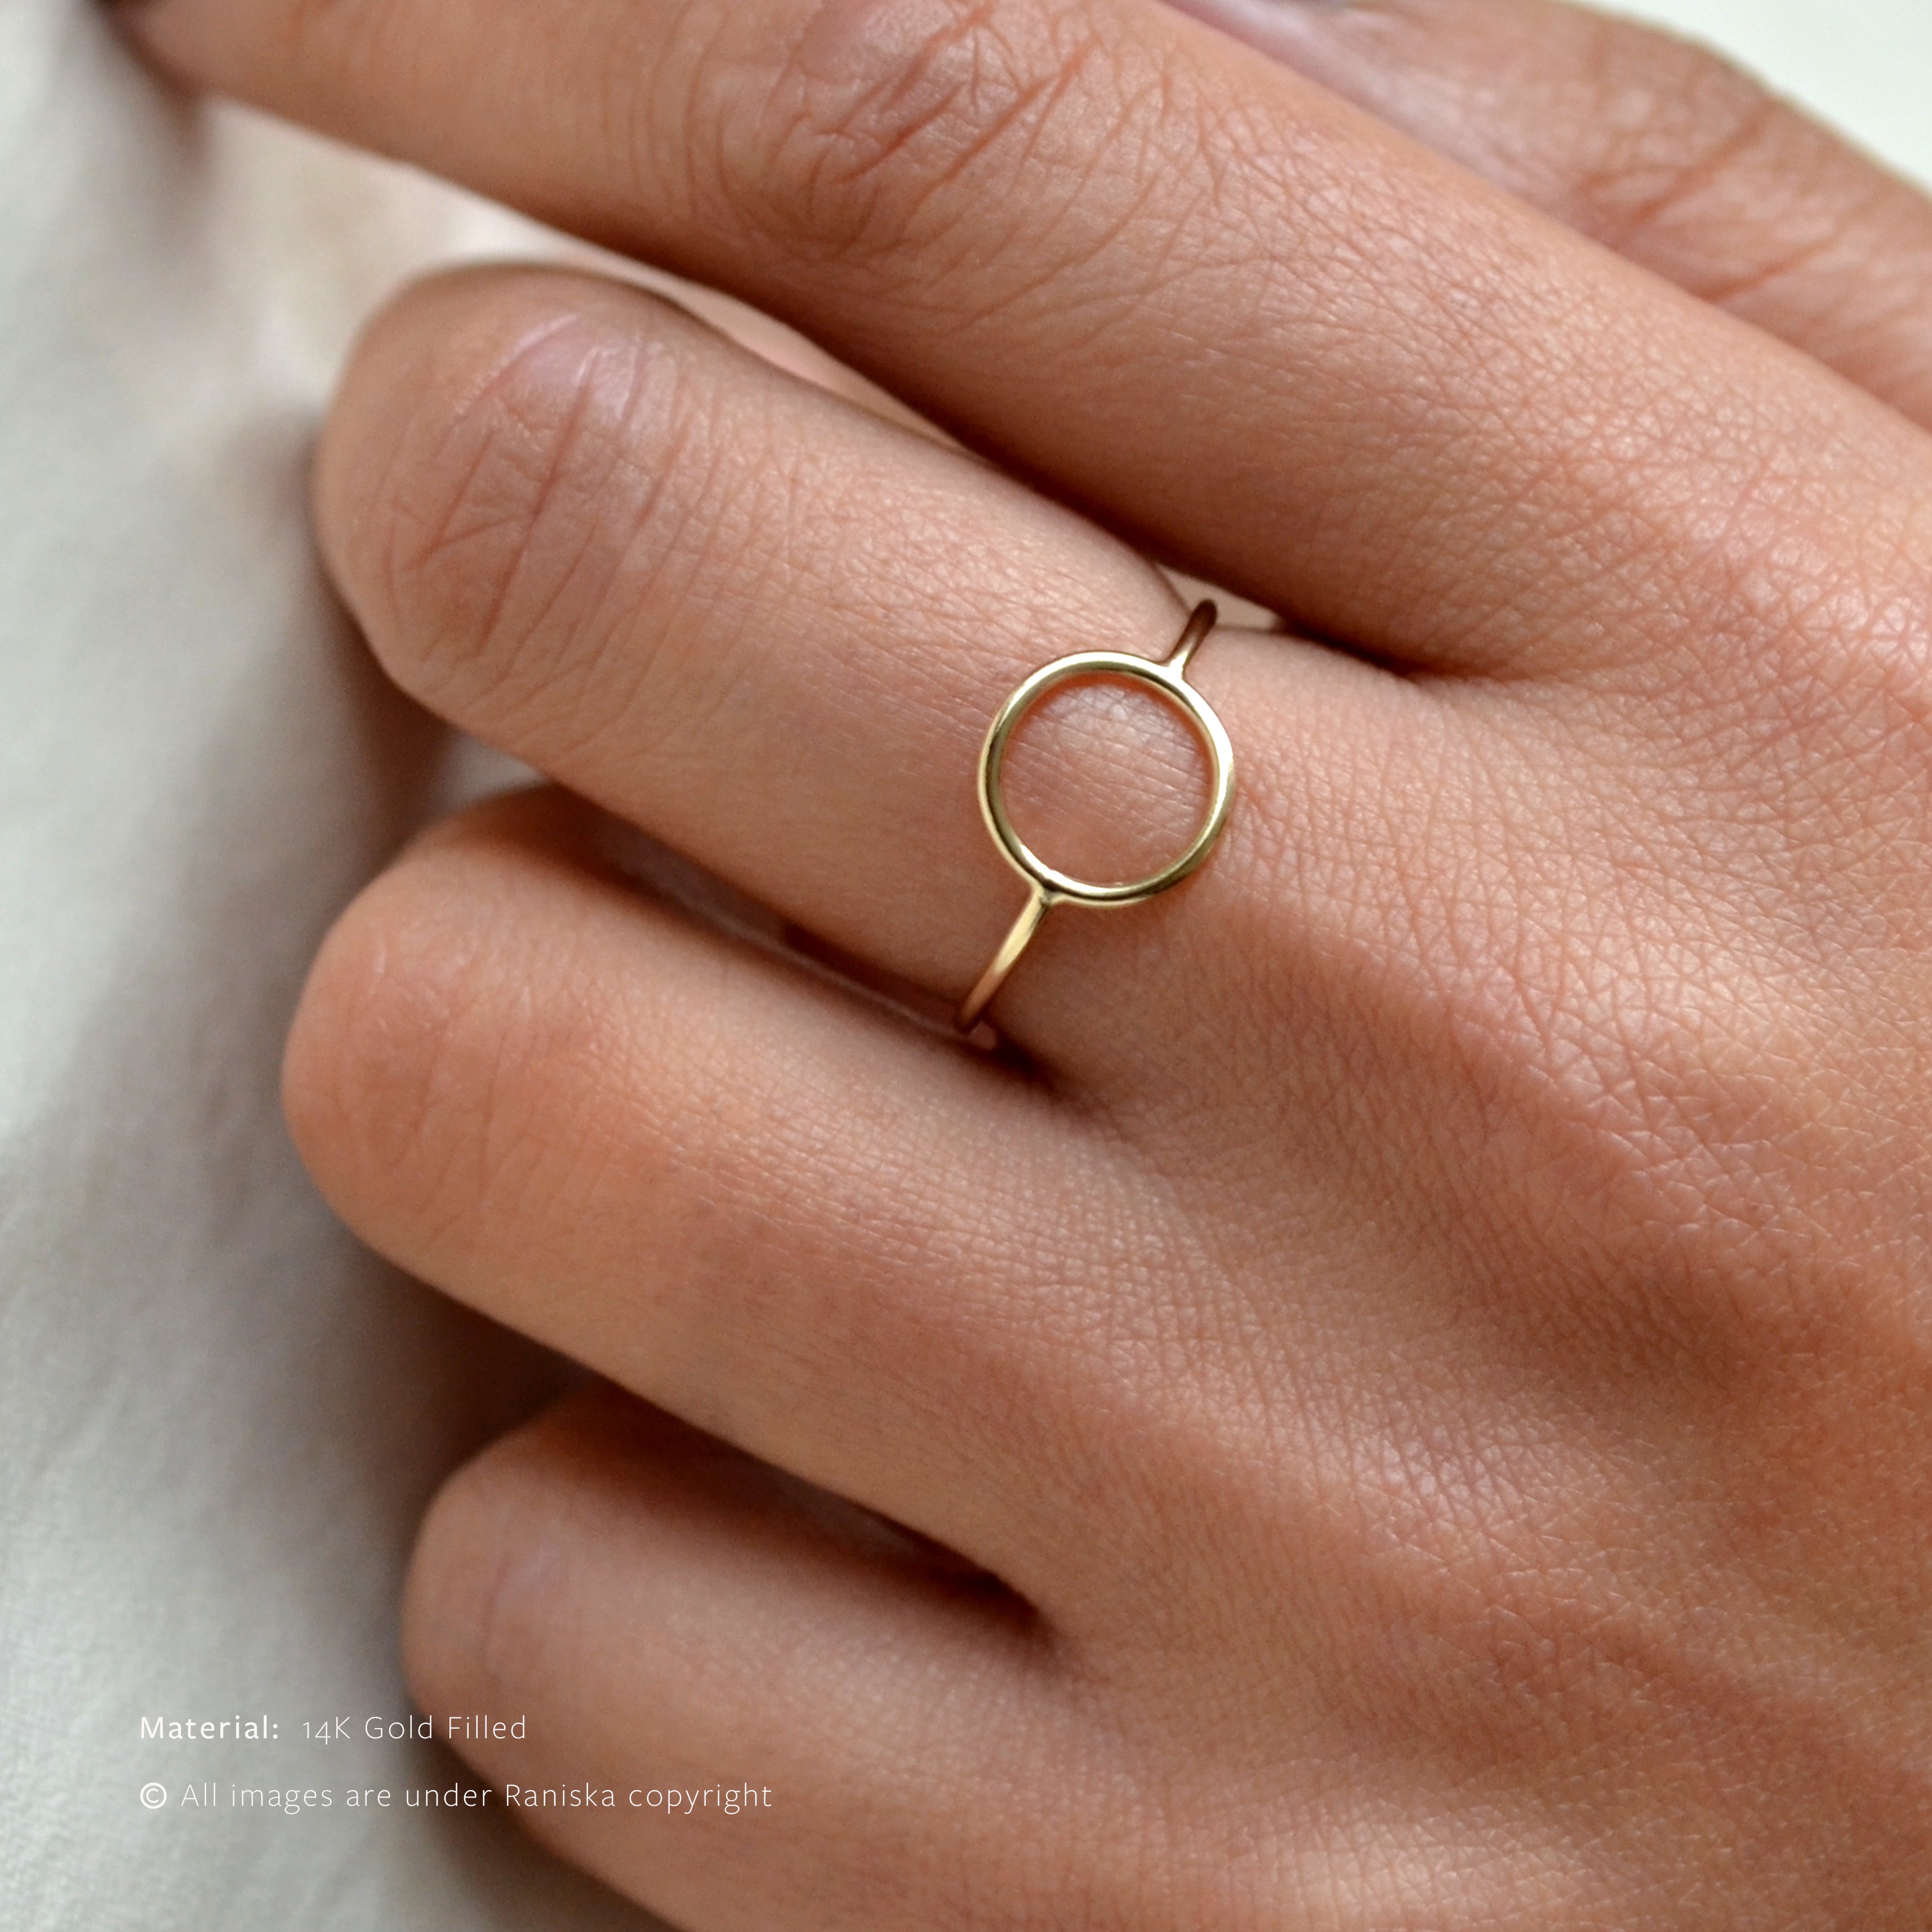 Vogue Circle Ring